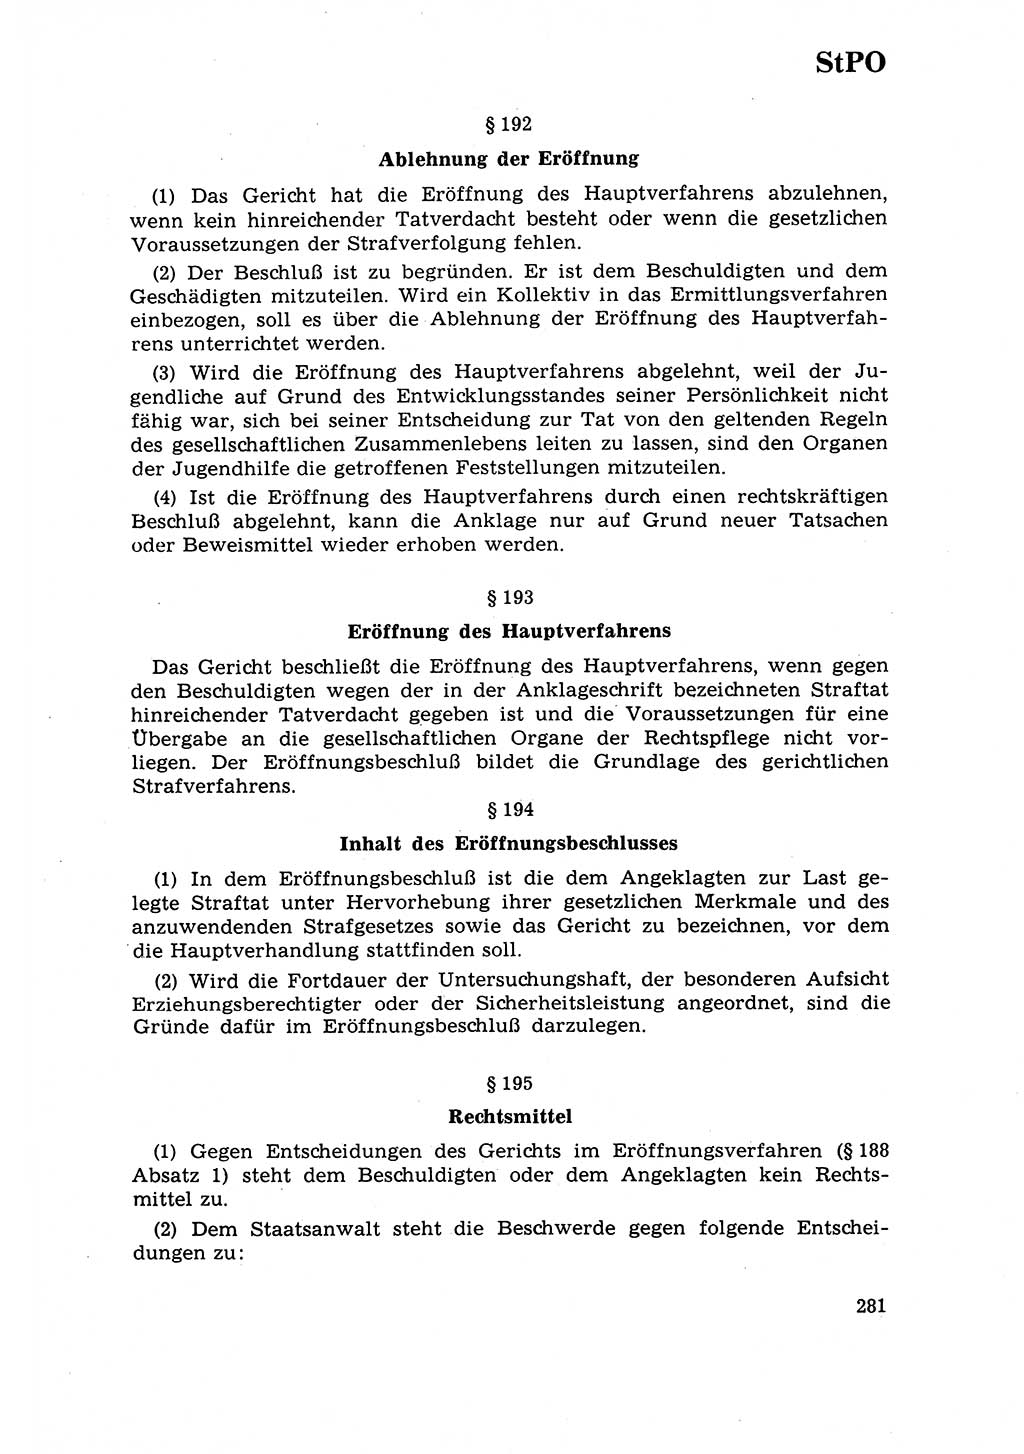 Strafrecht [Deutsche Demokratische Republik (DDR)] 1968, Seite 281 (Strafr. DDR 1968, S. 281)